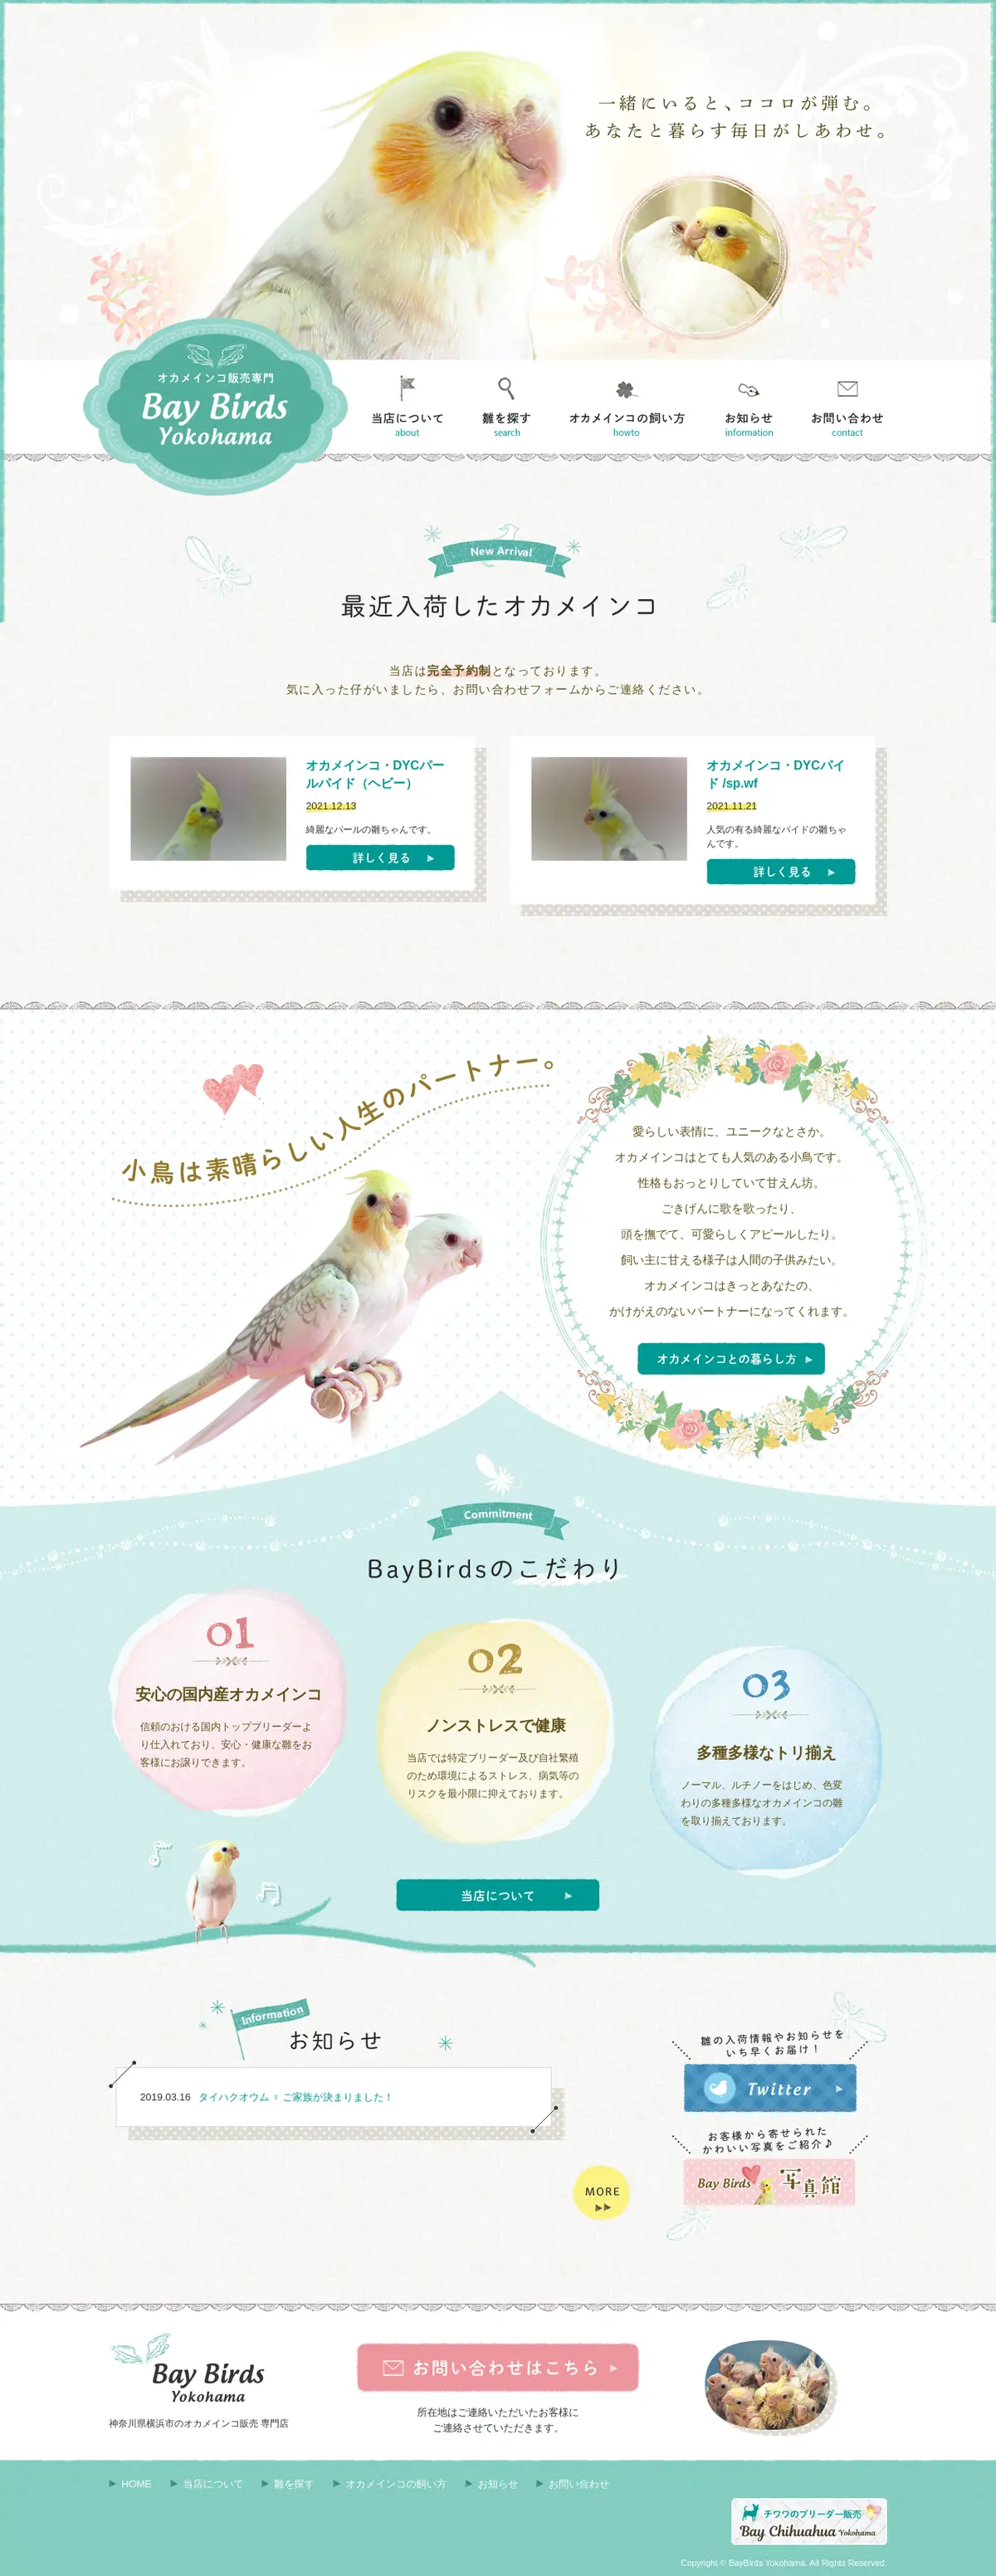 キャプチャ画面 会社名:ベイバードヨコハマプロジェクト名:Bay Birds Yokohama 画面名:全国トップ デバイス名:PCカテゴリ:動物・ペットタグ:全国トップ